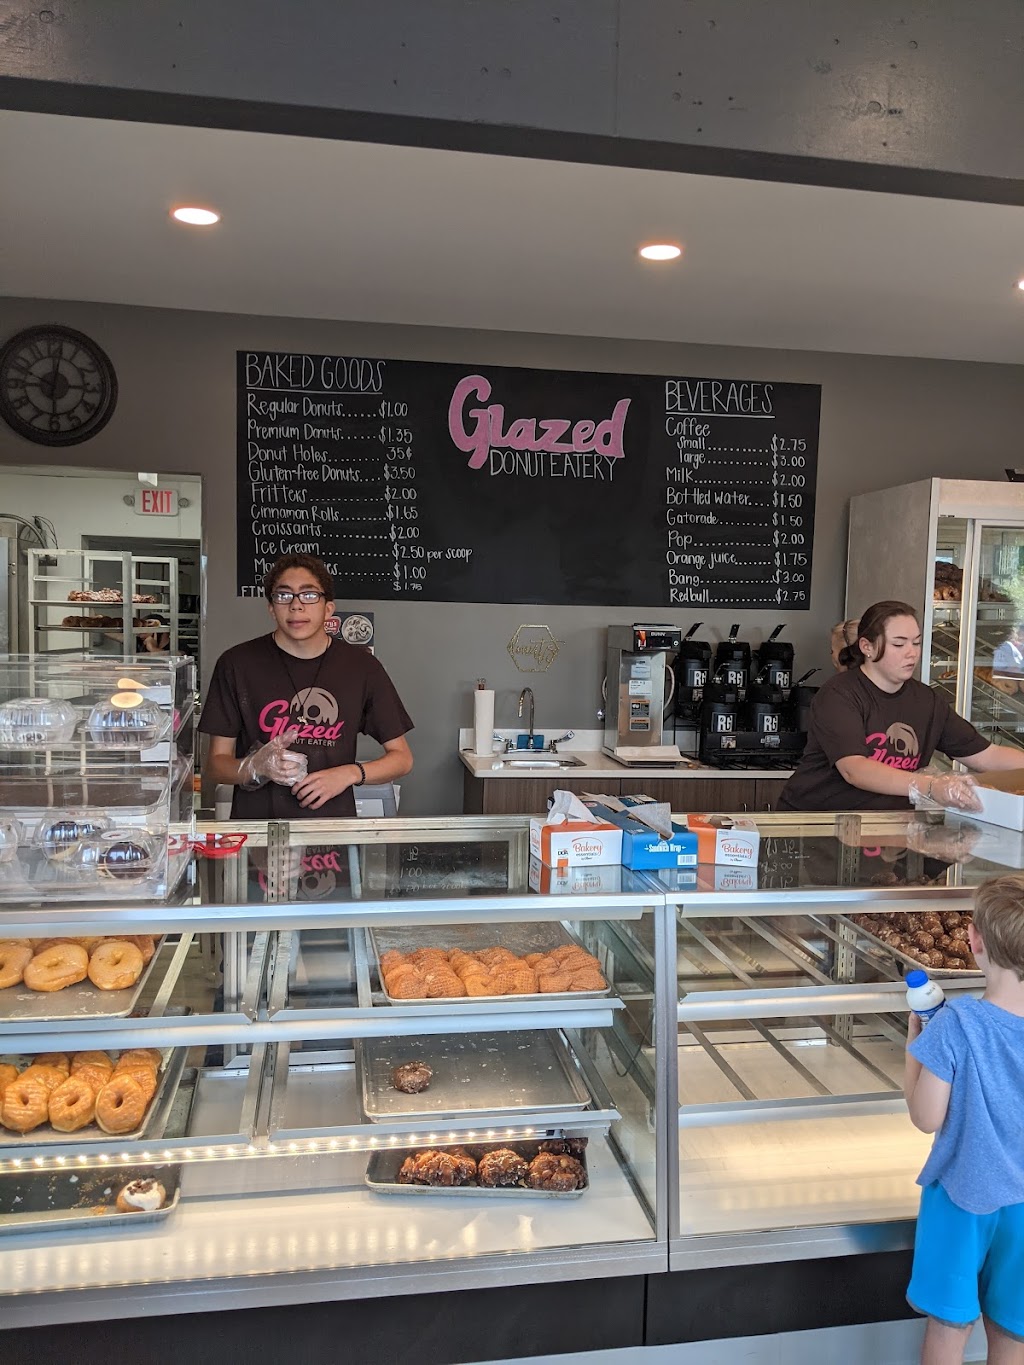 Glazed Donut Eatery | 607 N Detroit St, Xenia, OH 45385, USA | Phone: (937) 736-2031